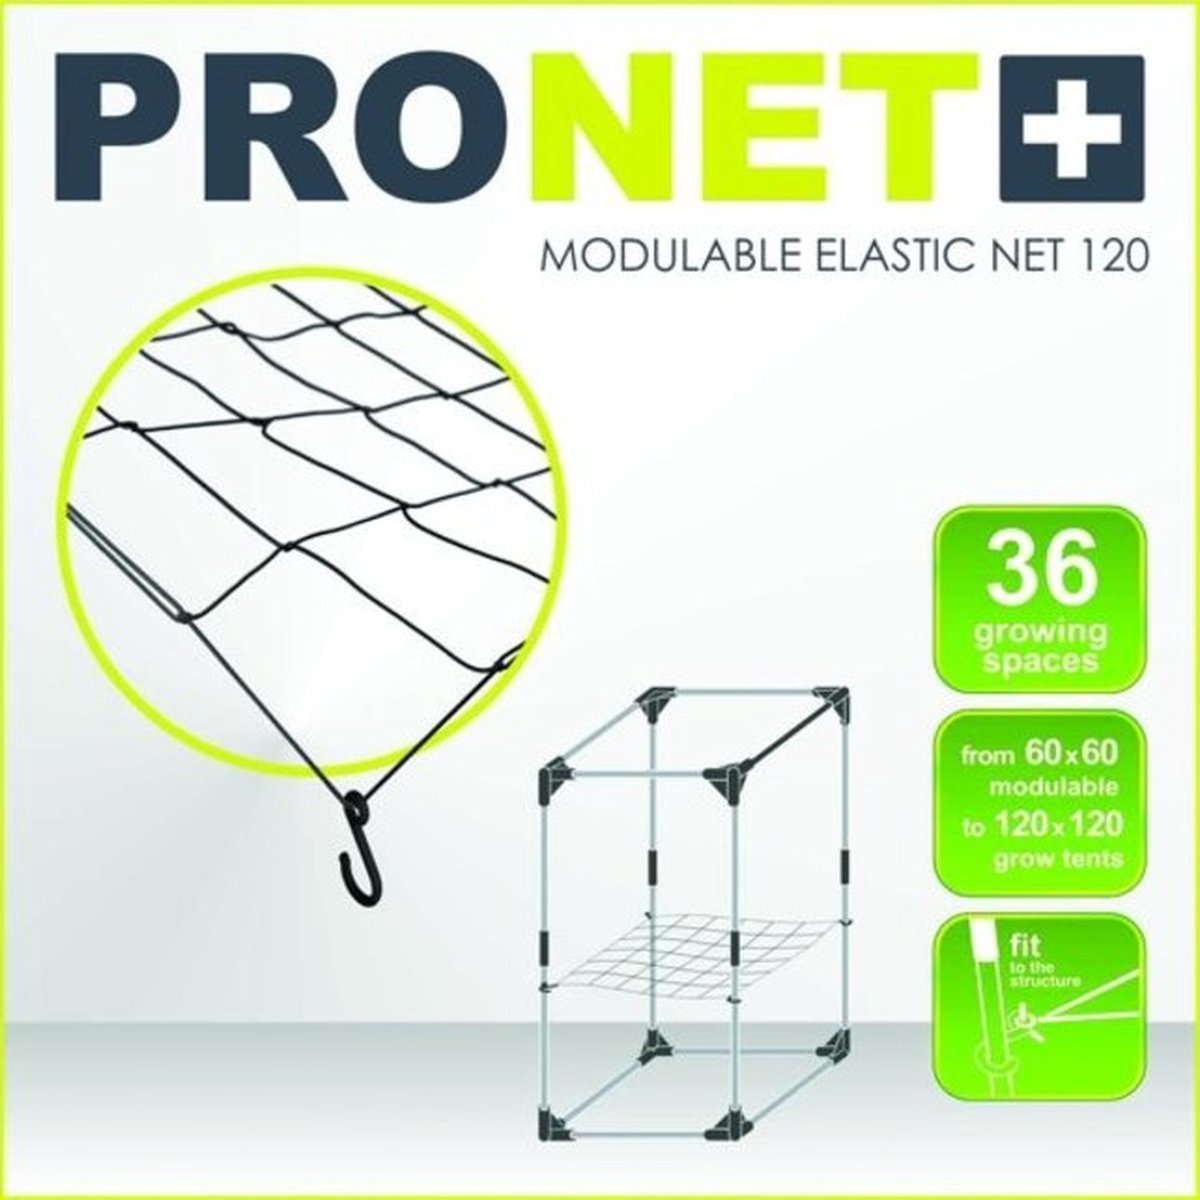 PRONET MODULABLE 120 x 120 Modulable elastic net 6x6 = 36 growing spaces - Garden High pro